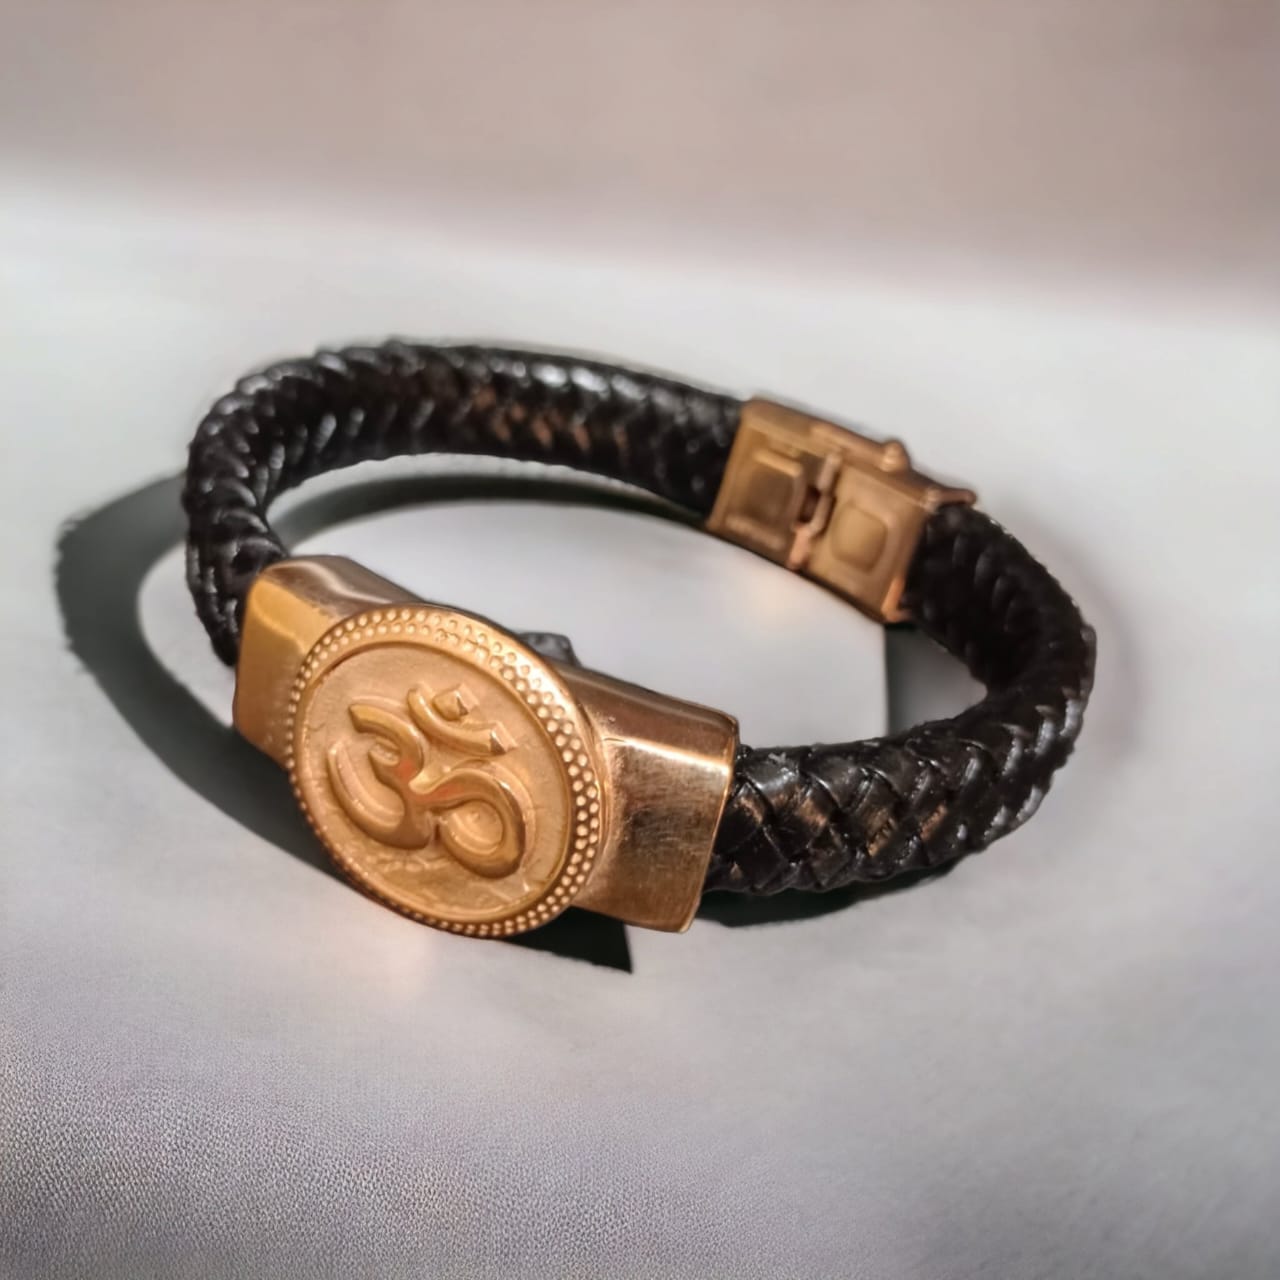 Om devotional bracelet for men